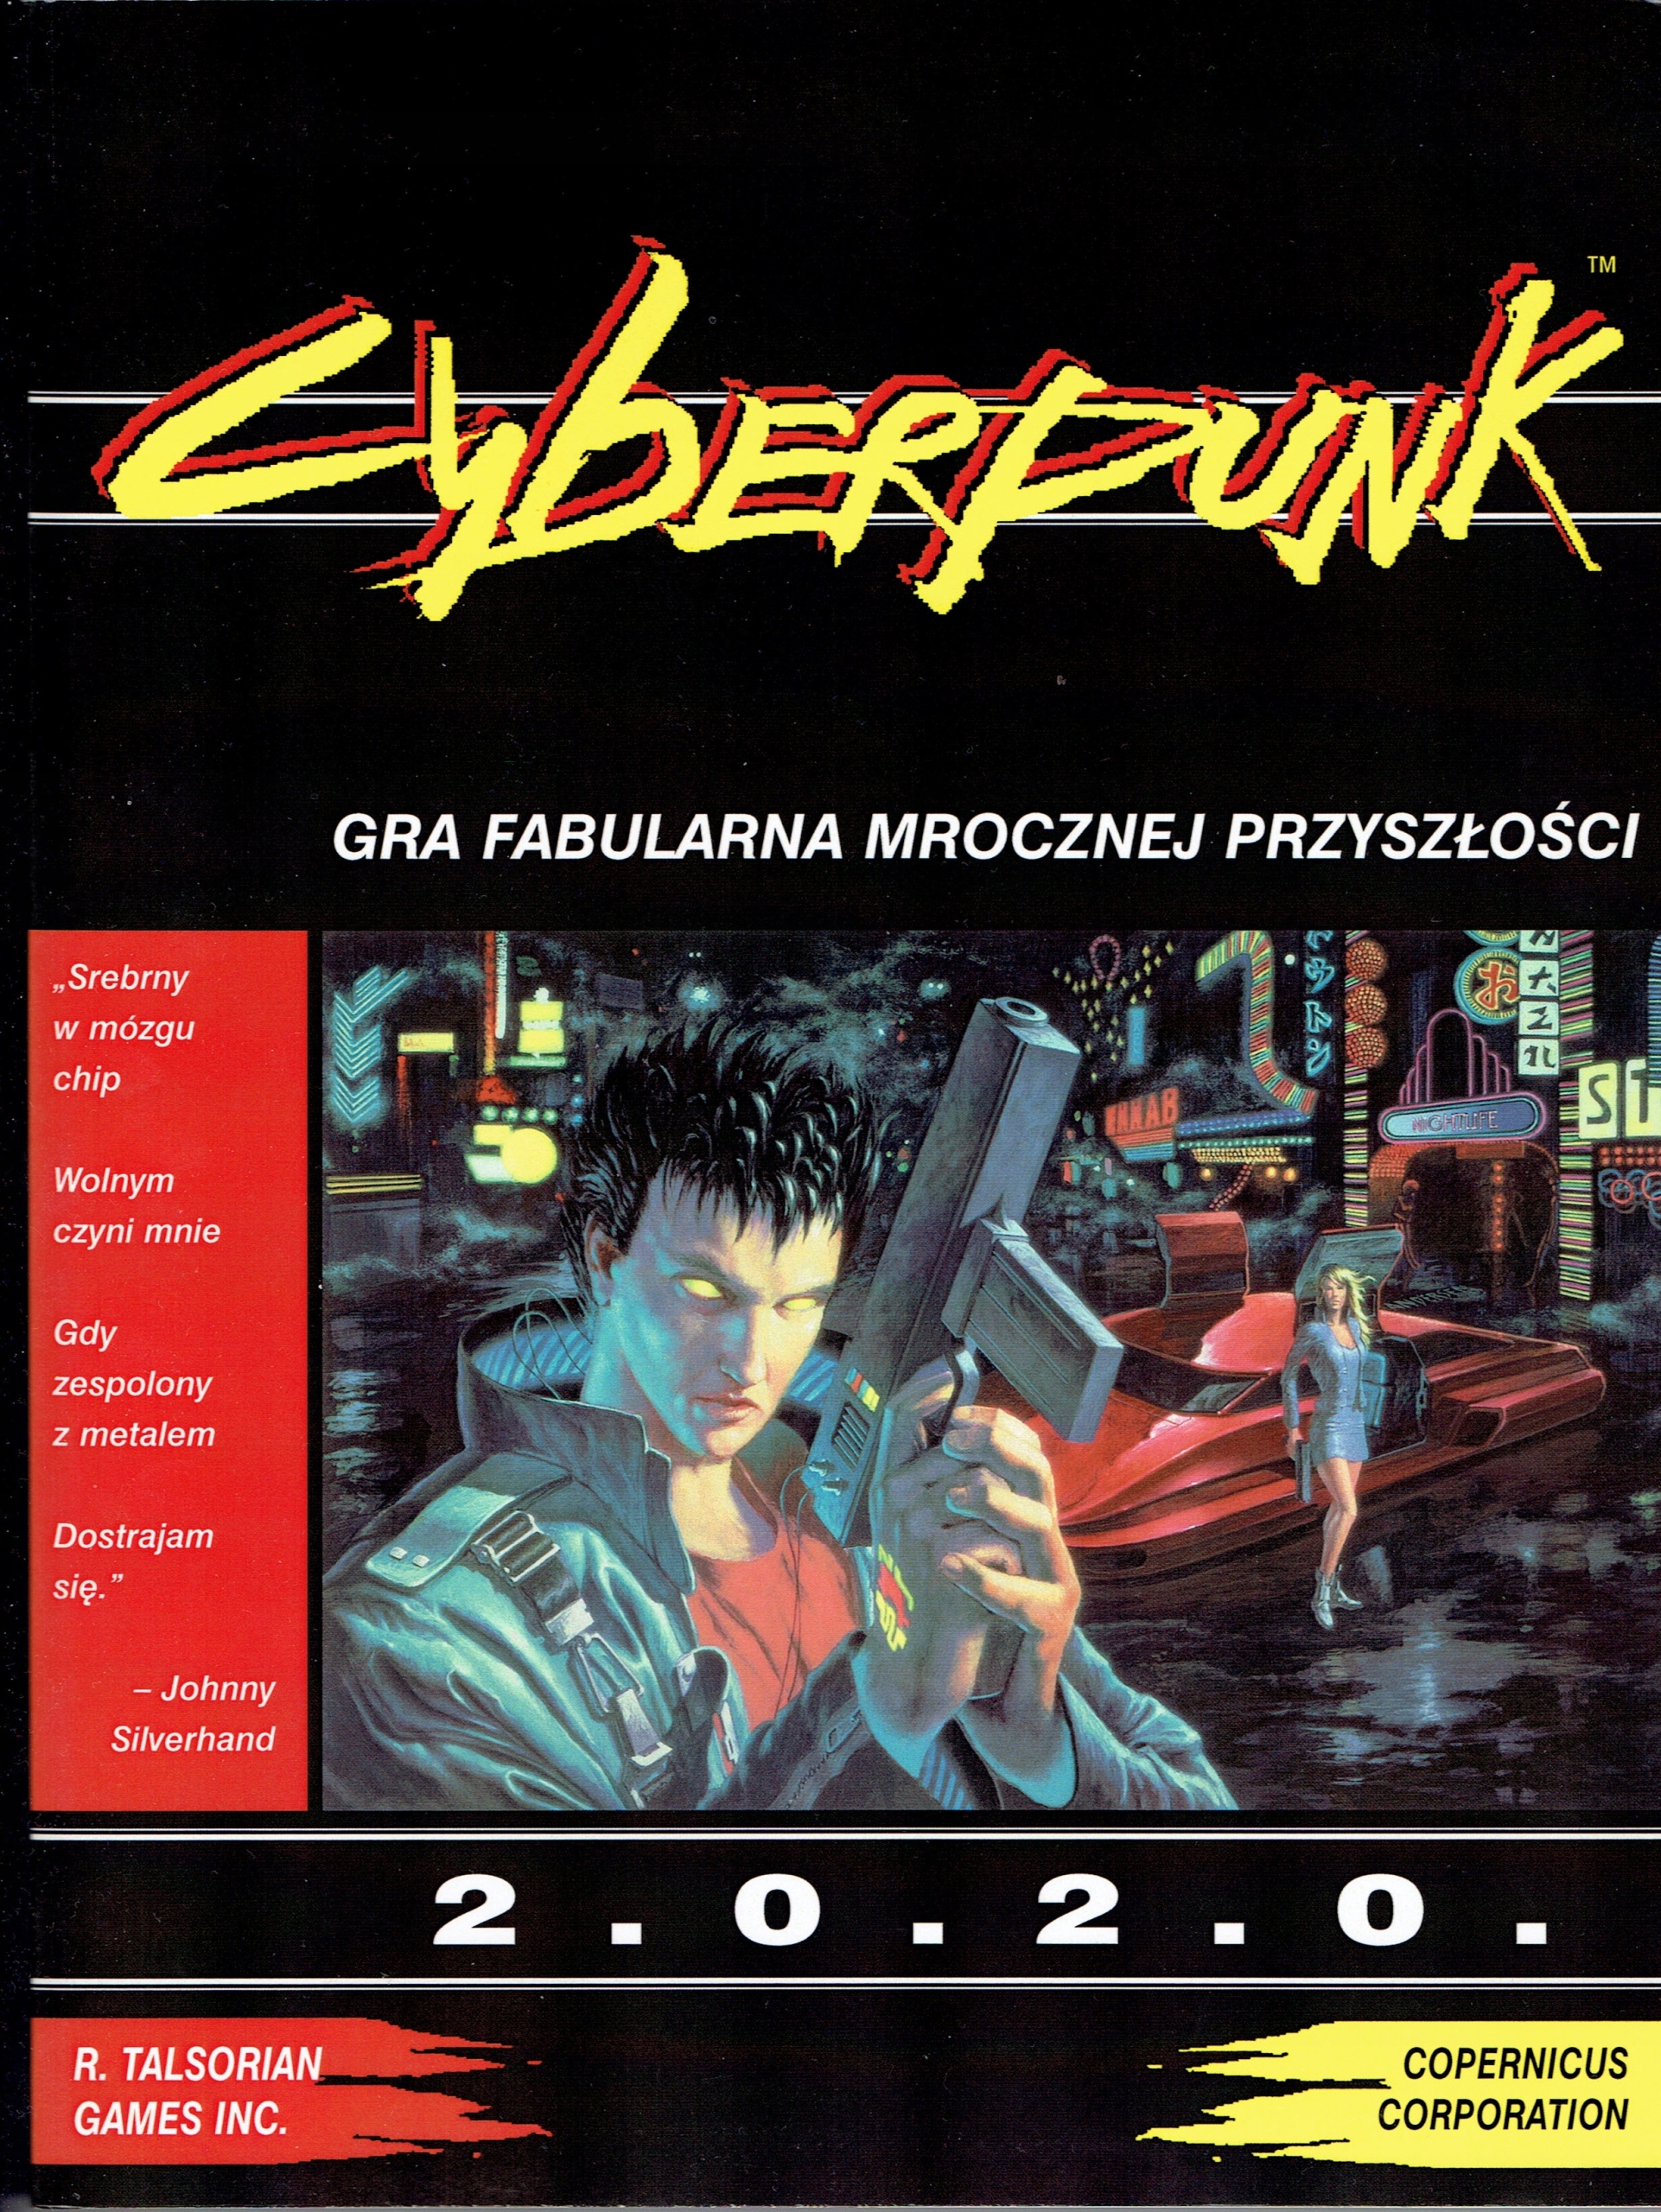 Cyberpunk 2020 дополнения фото 63